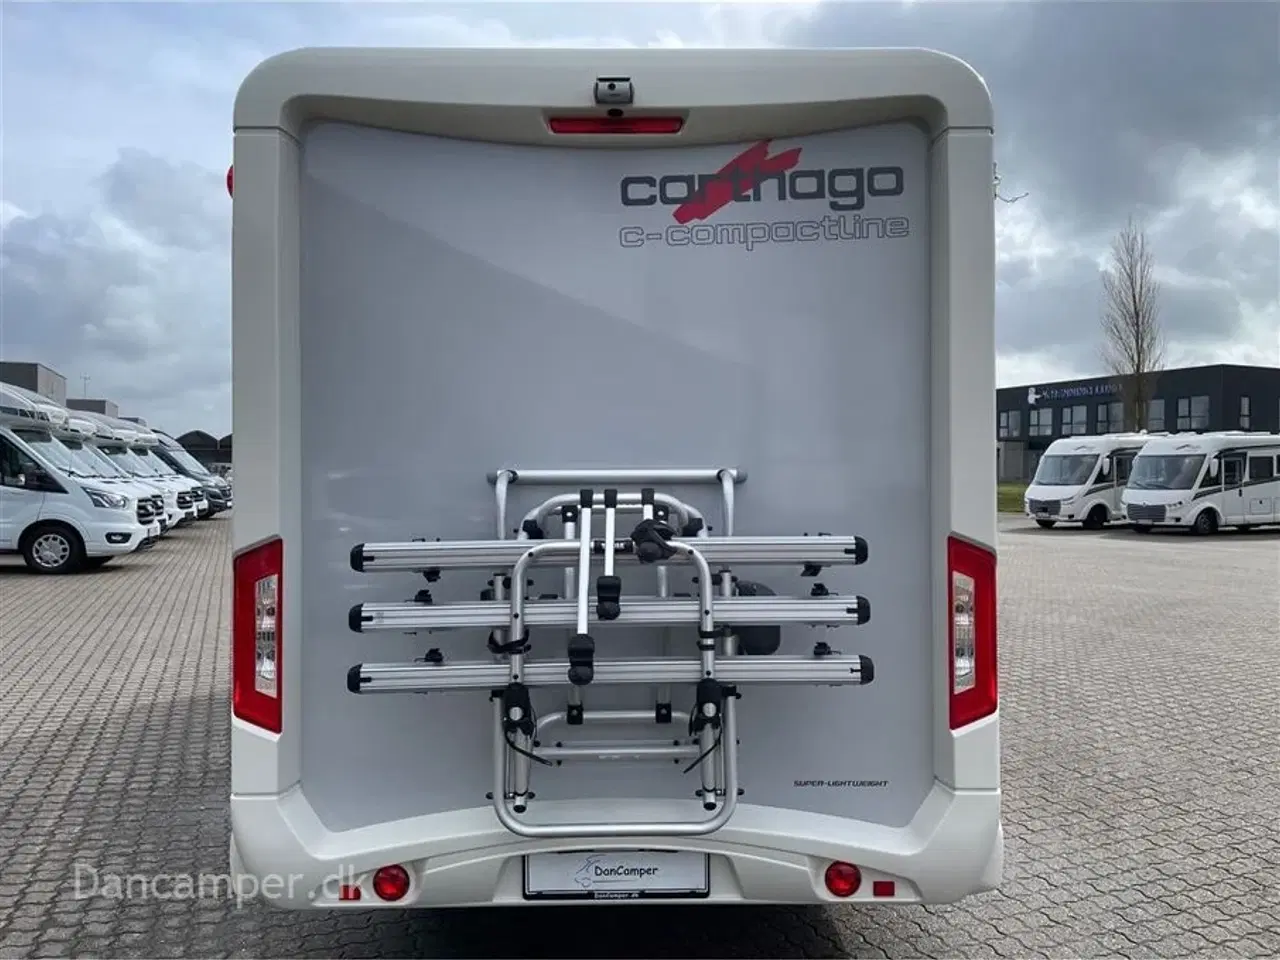 Billede 6 - 2018 - Carthago compactline 144 LE   Anvisningsbil. Automatgear - 150 hk, Enkeltsenge, solceller, inverter, hydrauliske selvnivilerende støttefødder